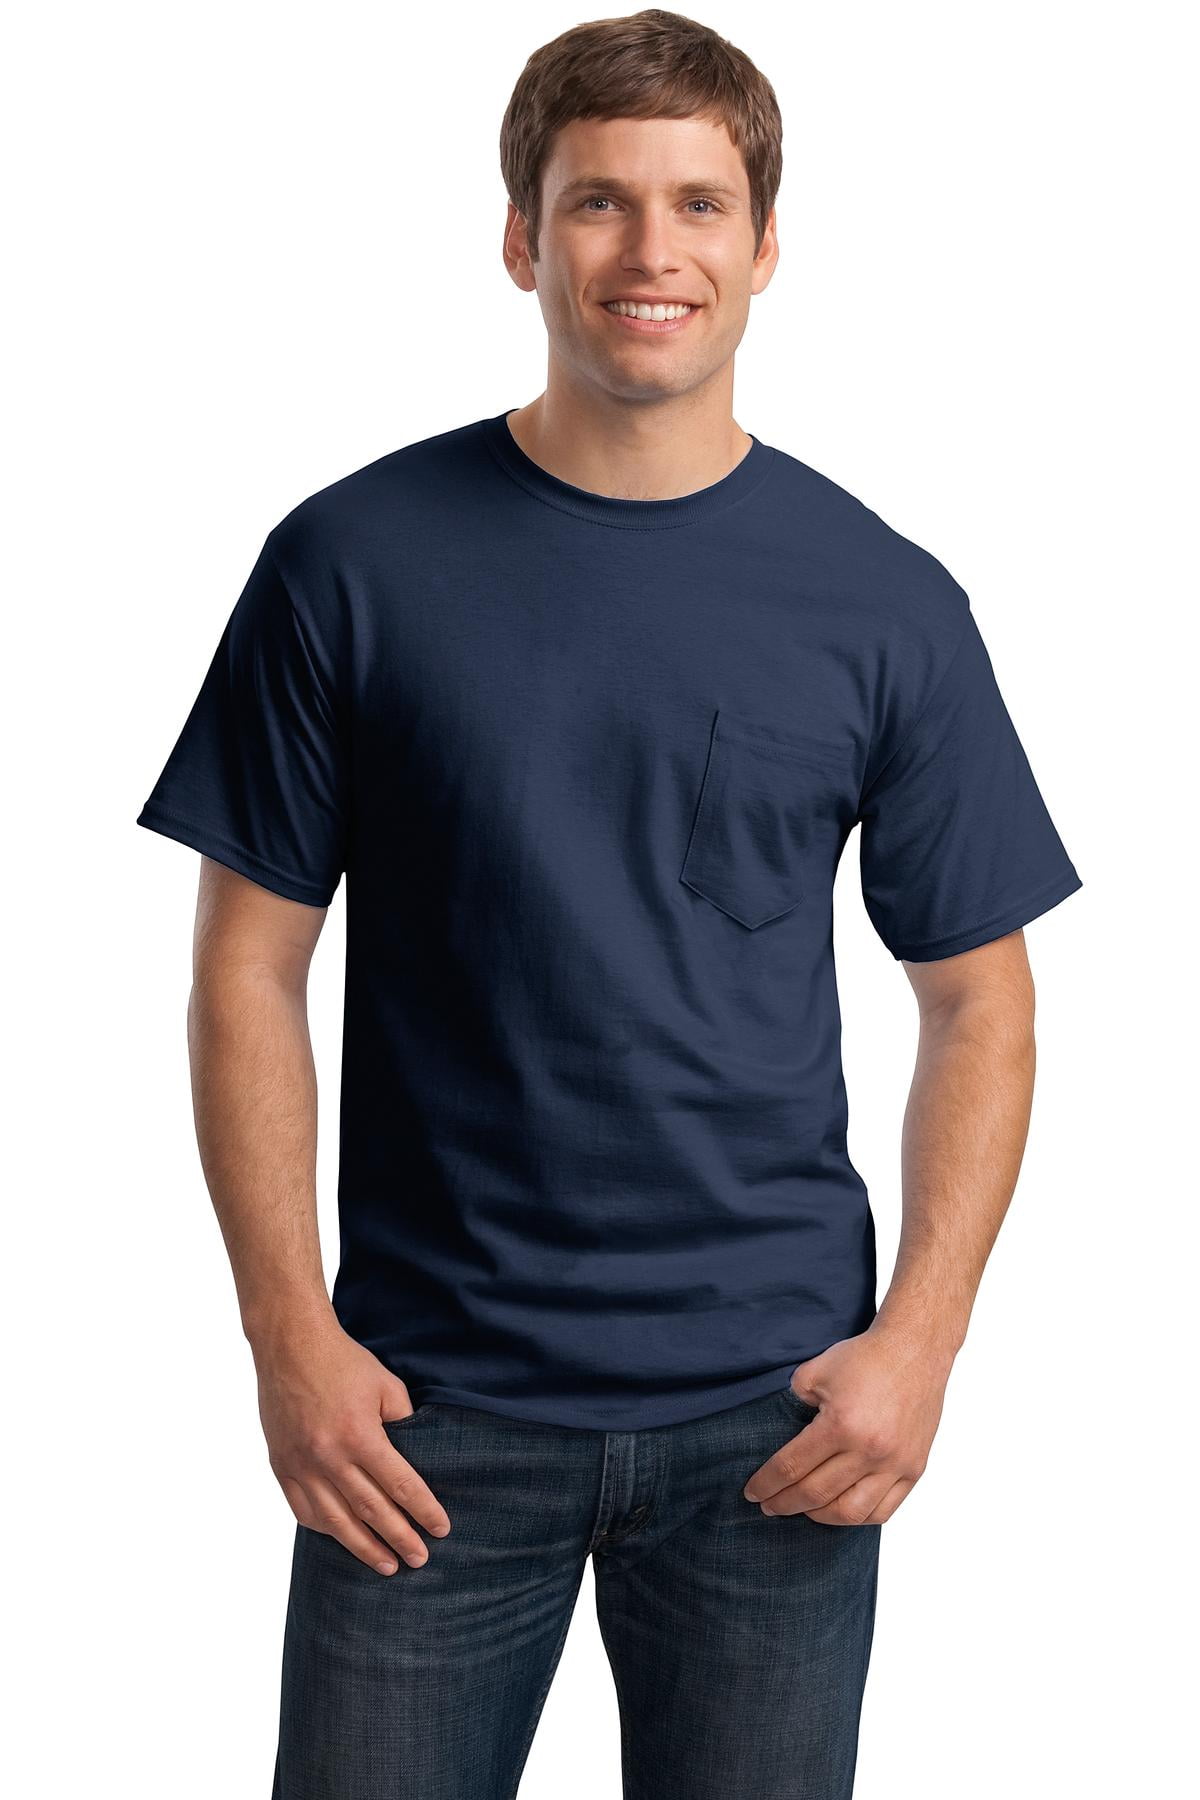 Hanes 6.1 oz. Pocket T-Shirt (H5590) Navy, 2XL - Walmart.com